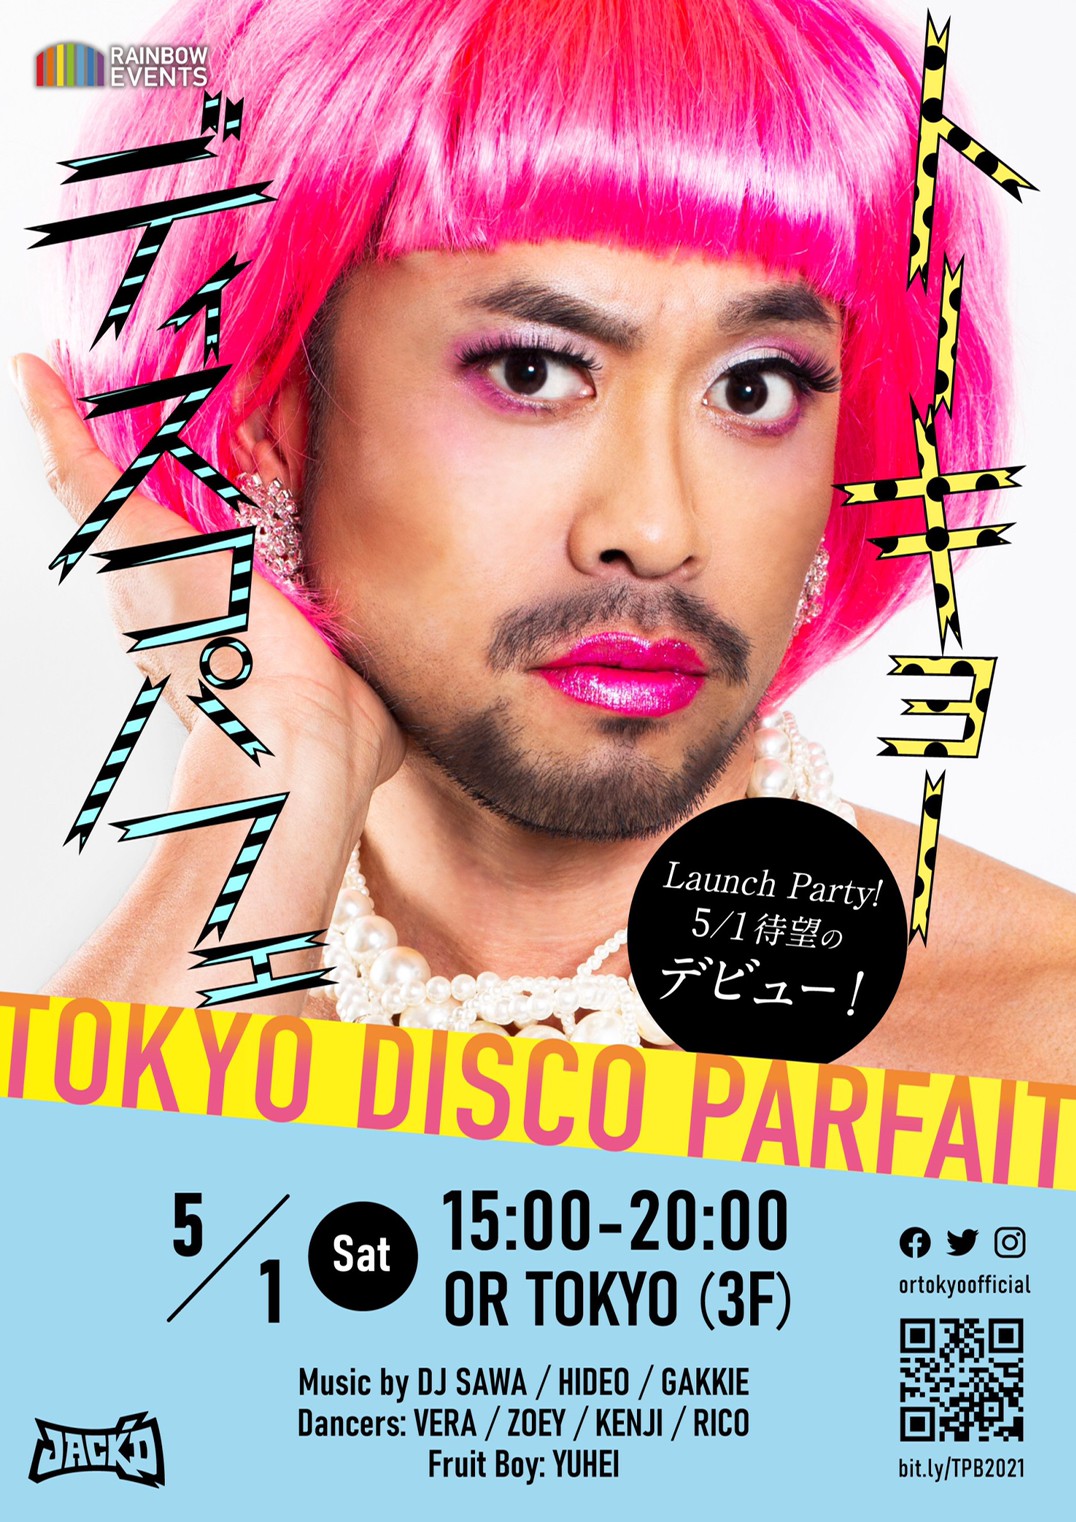 【6/5に延期】TOKYO DISCO PARFAIT Launch Party